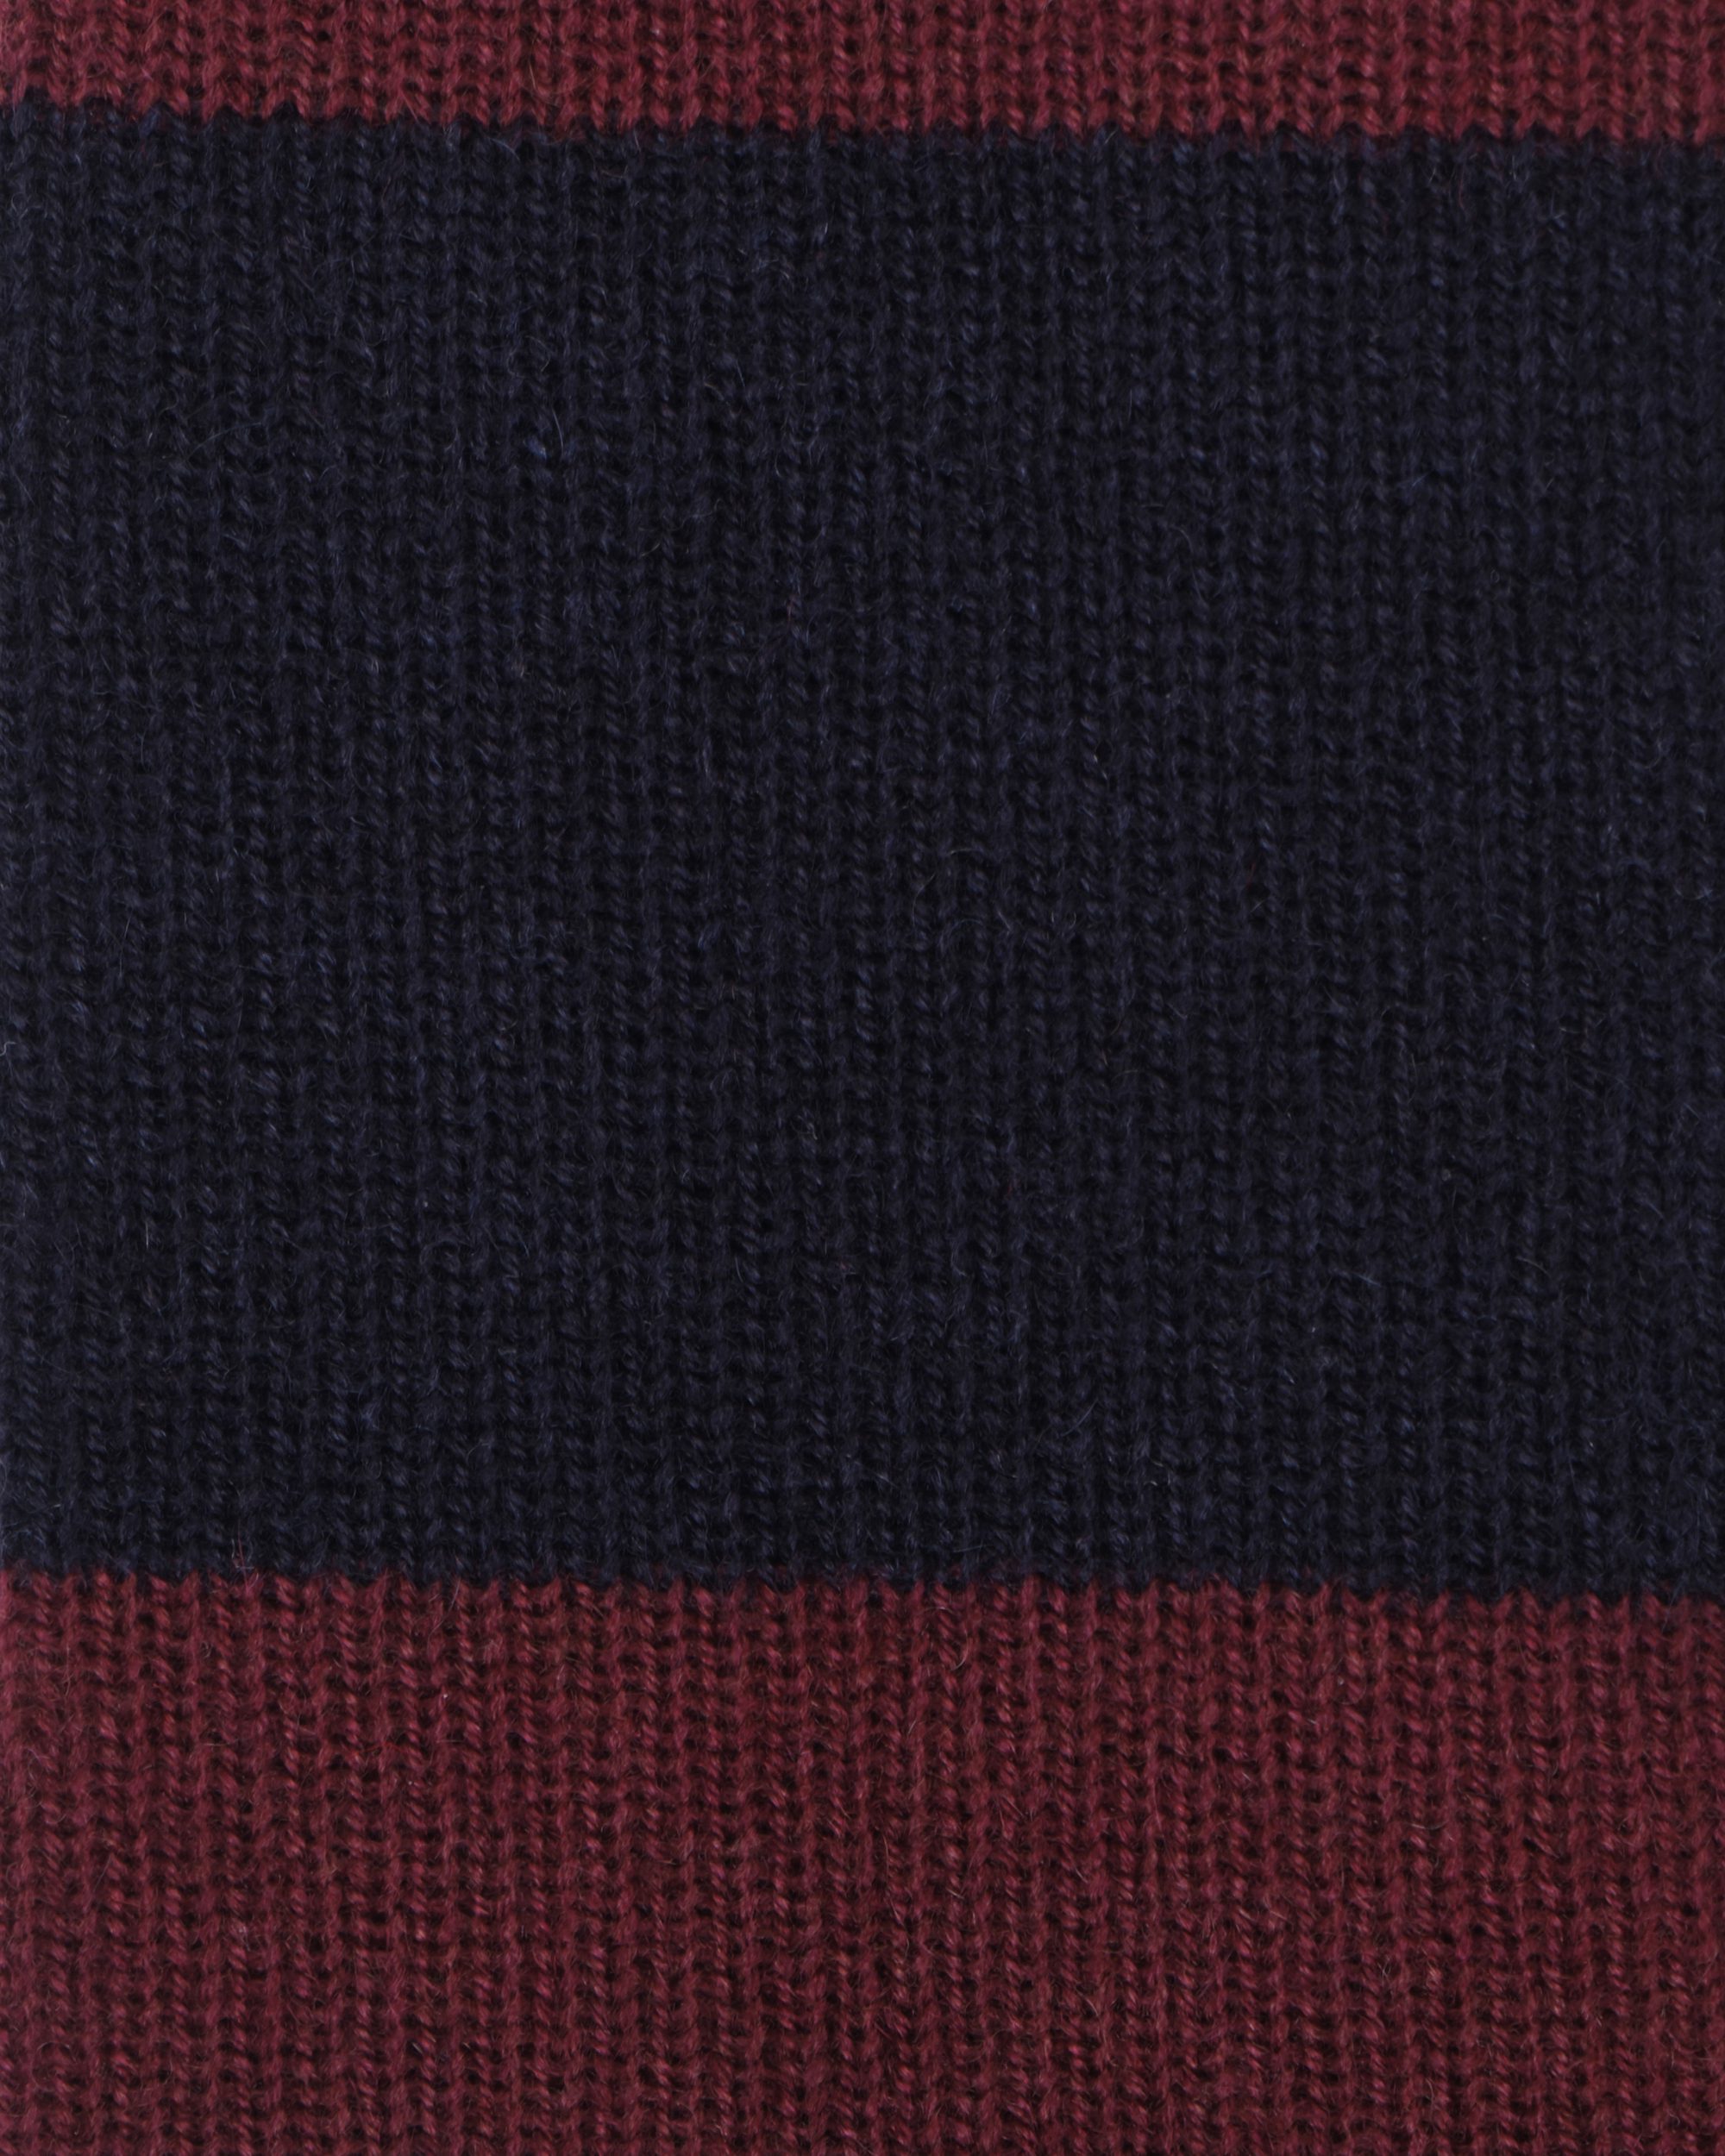 Stripe Knitted 100% Cashmere Tie - Navy/Wine | Viola Milano